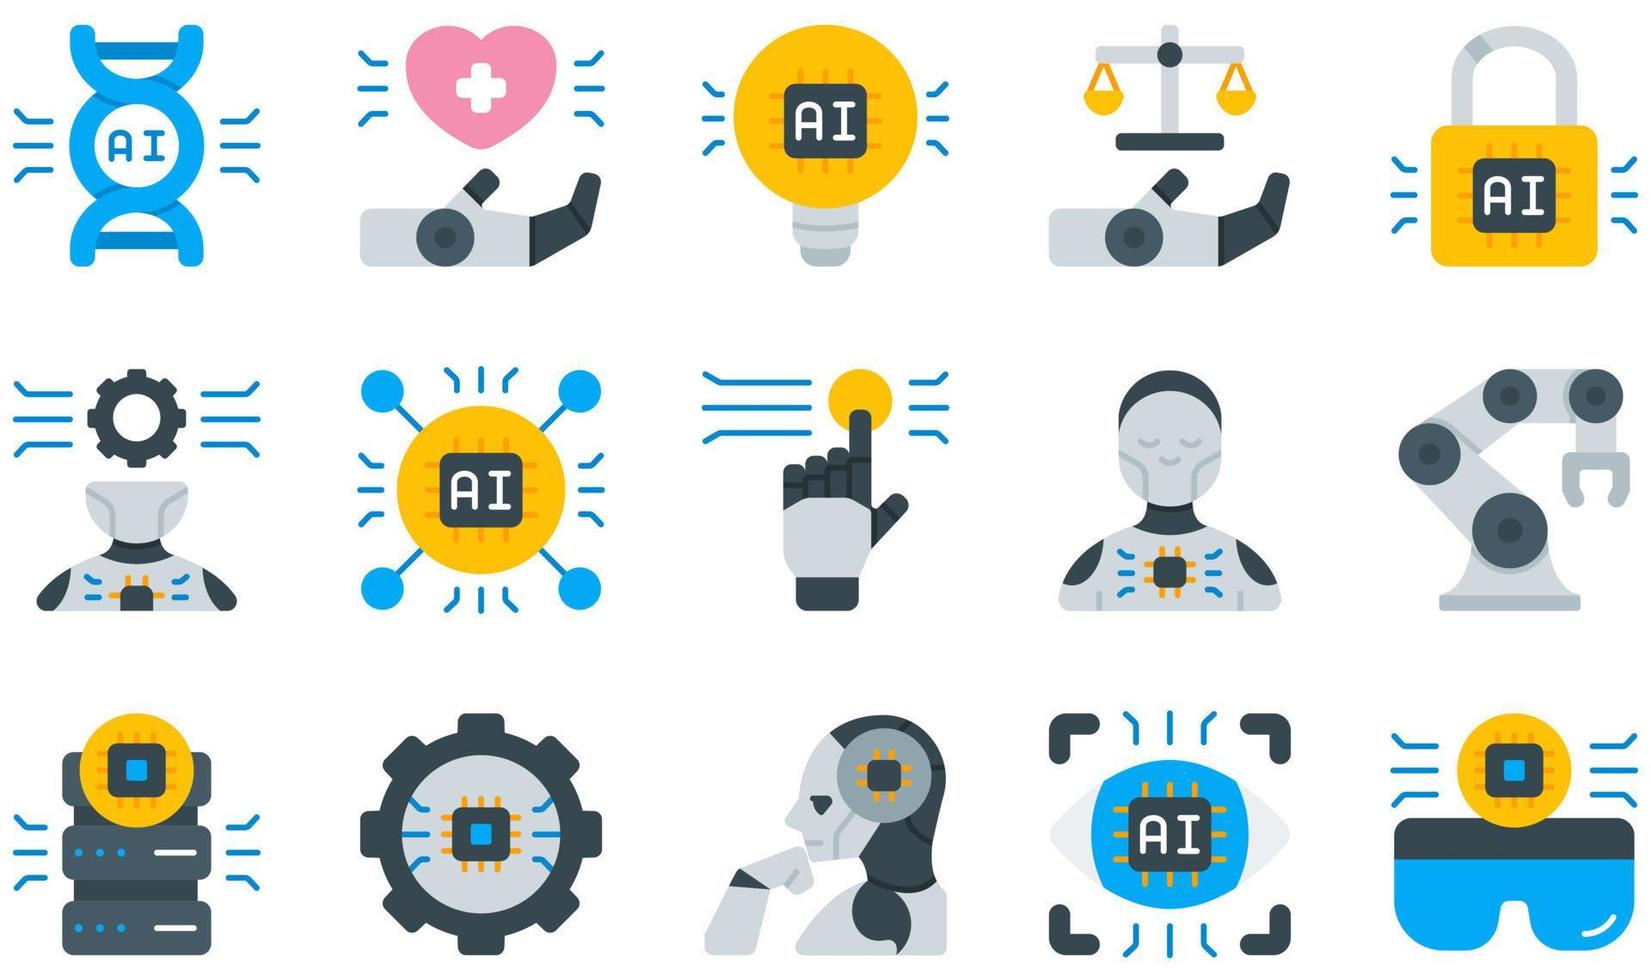 ensemble d'icônes vectorielles liées à l'intelligence artificielle. contient des icônes telles que les soins de santé, l'idée, la loi, l'apprentissage automatique, la robotique, le bras robotique et plus encore. vecteur